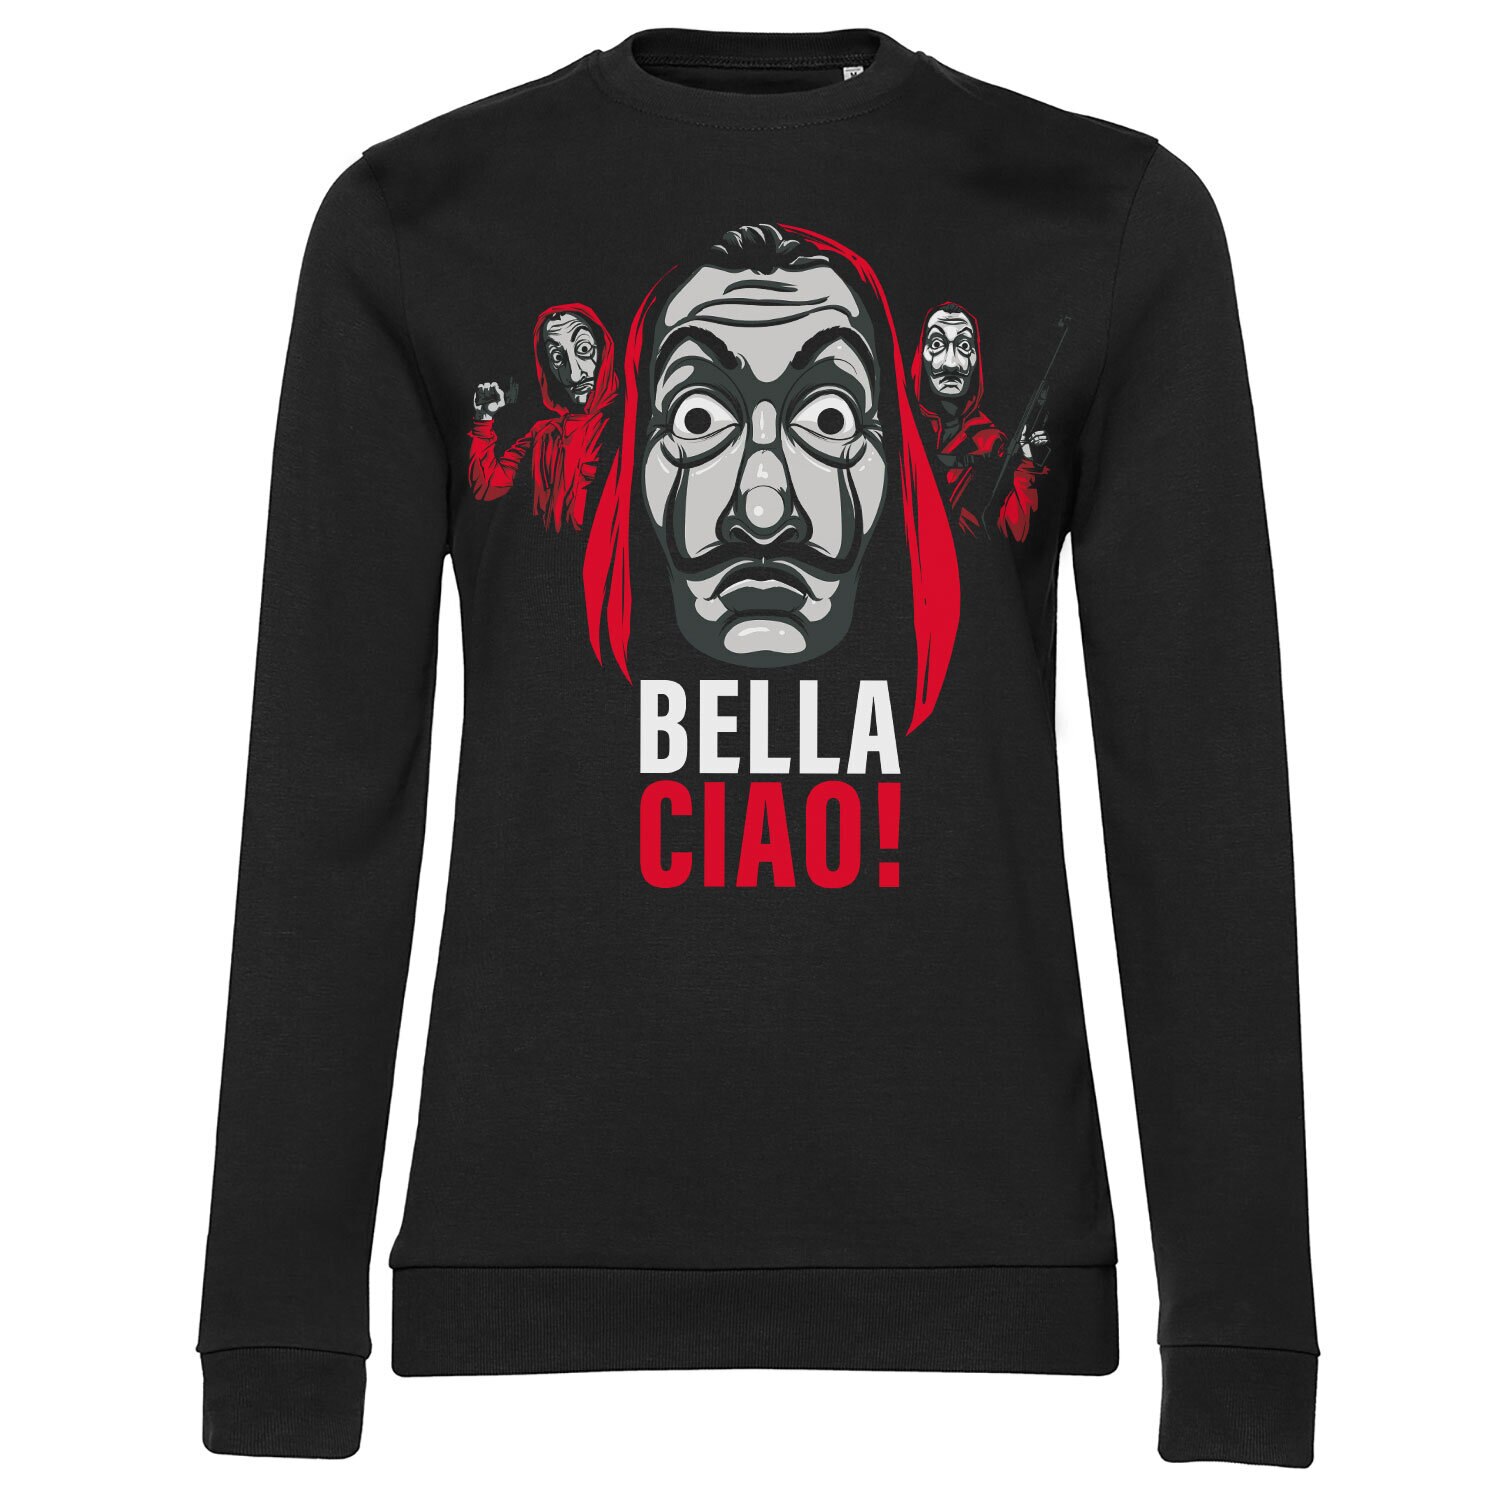 La Casa De Papel - Bella Ciao! Girly Sweatshirt